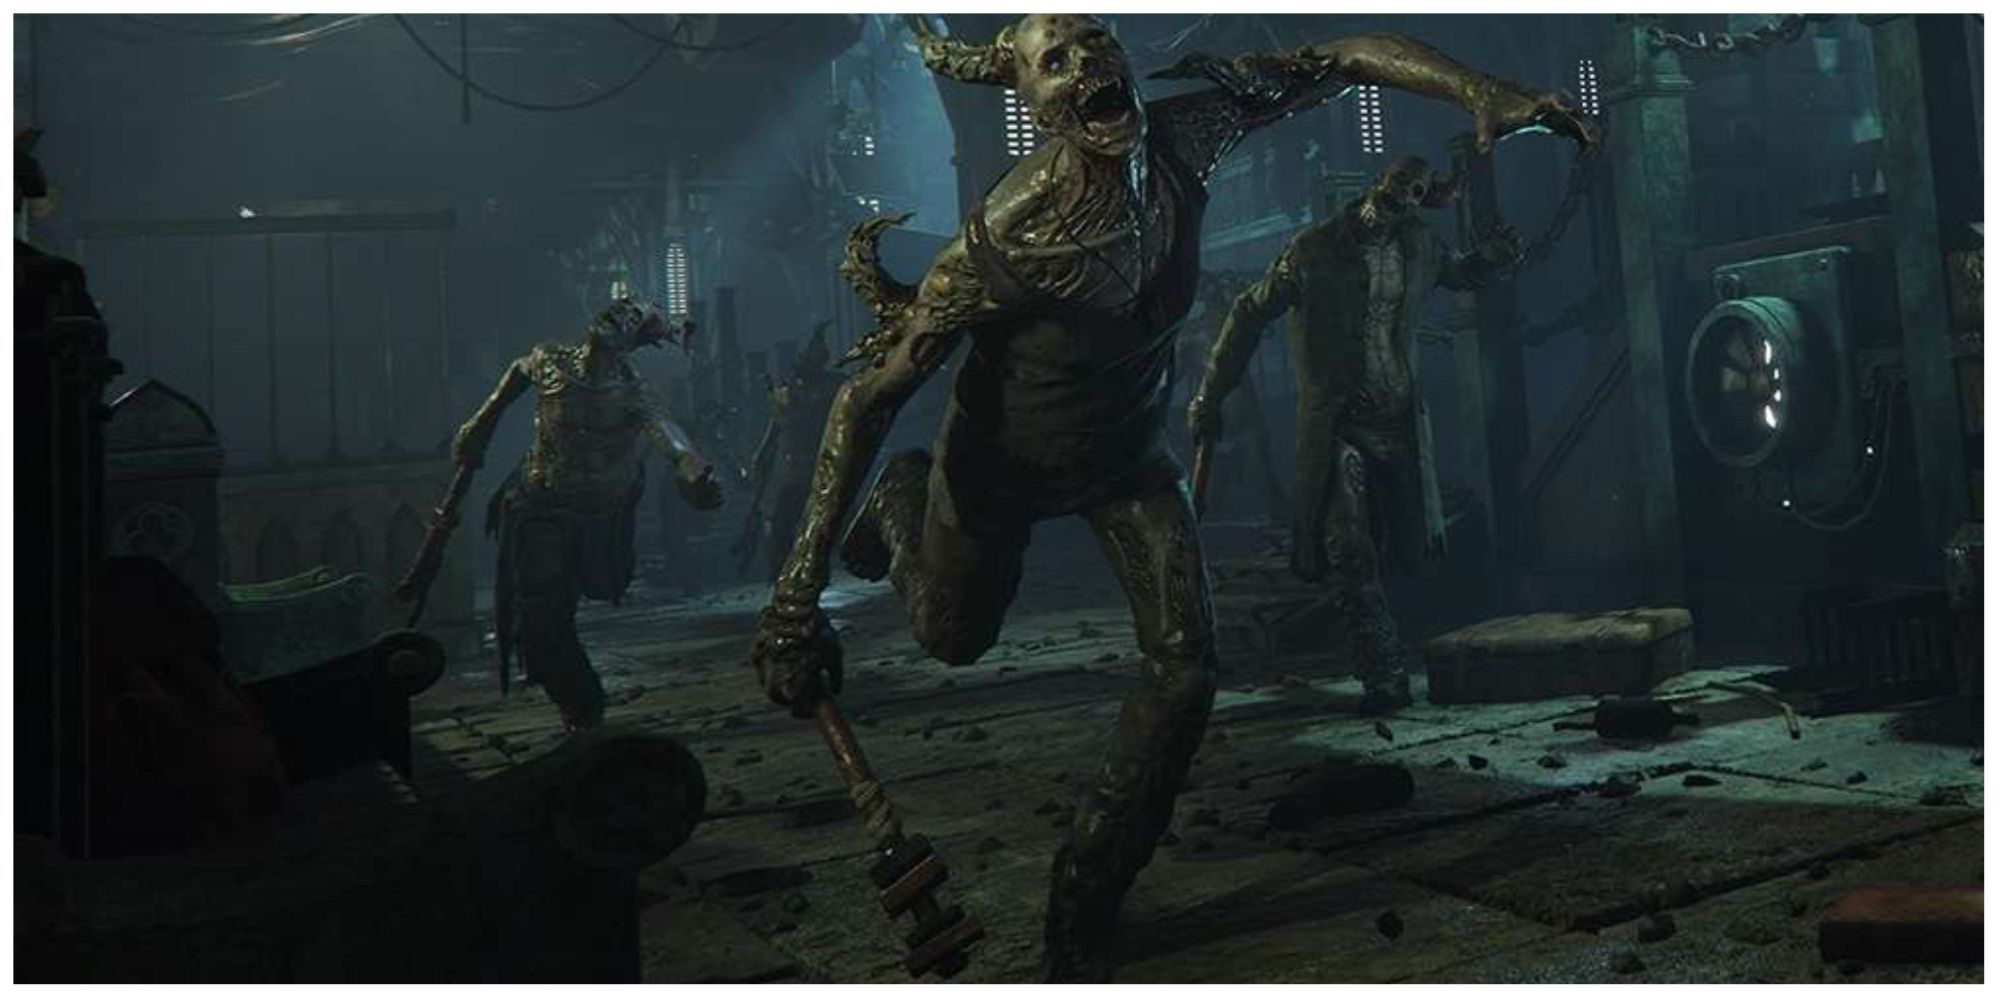 Chaos-corrupted in Warhammer 40,000: Darktide